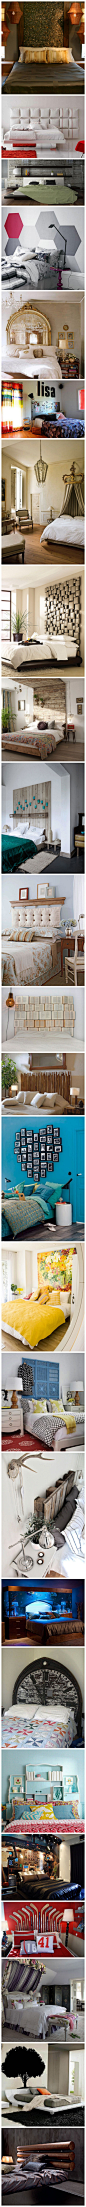 超酷的床头布景创意设计，你喜欢哪款？